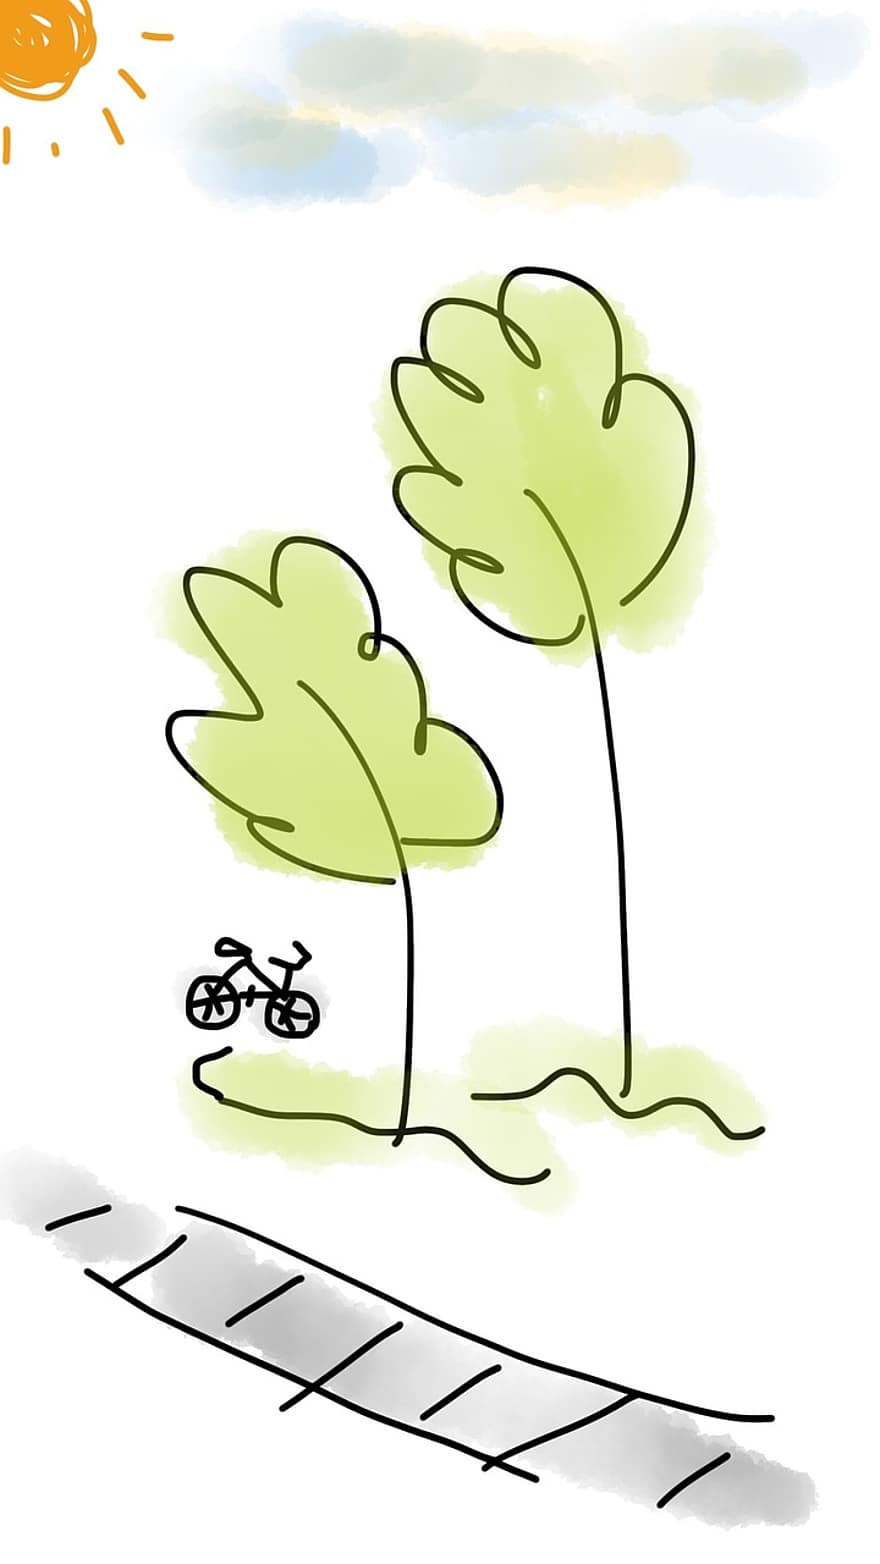 साइकिल, पेड़, घर के बाहर, हरा, निशान, खेल, बाइक, सड़क, गतिविधि, बाइकिंग, रवि